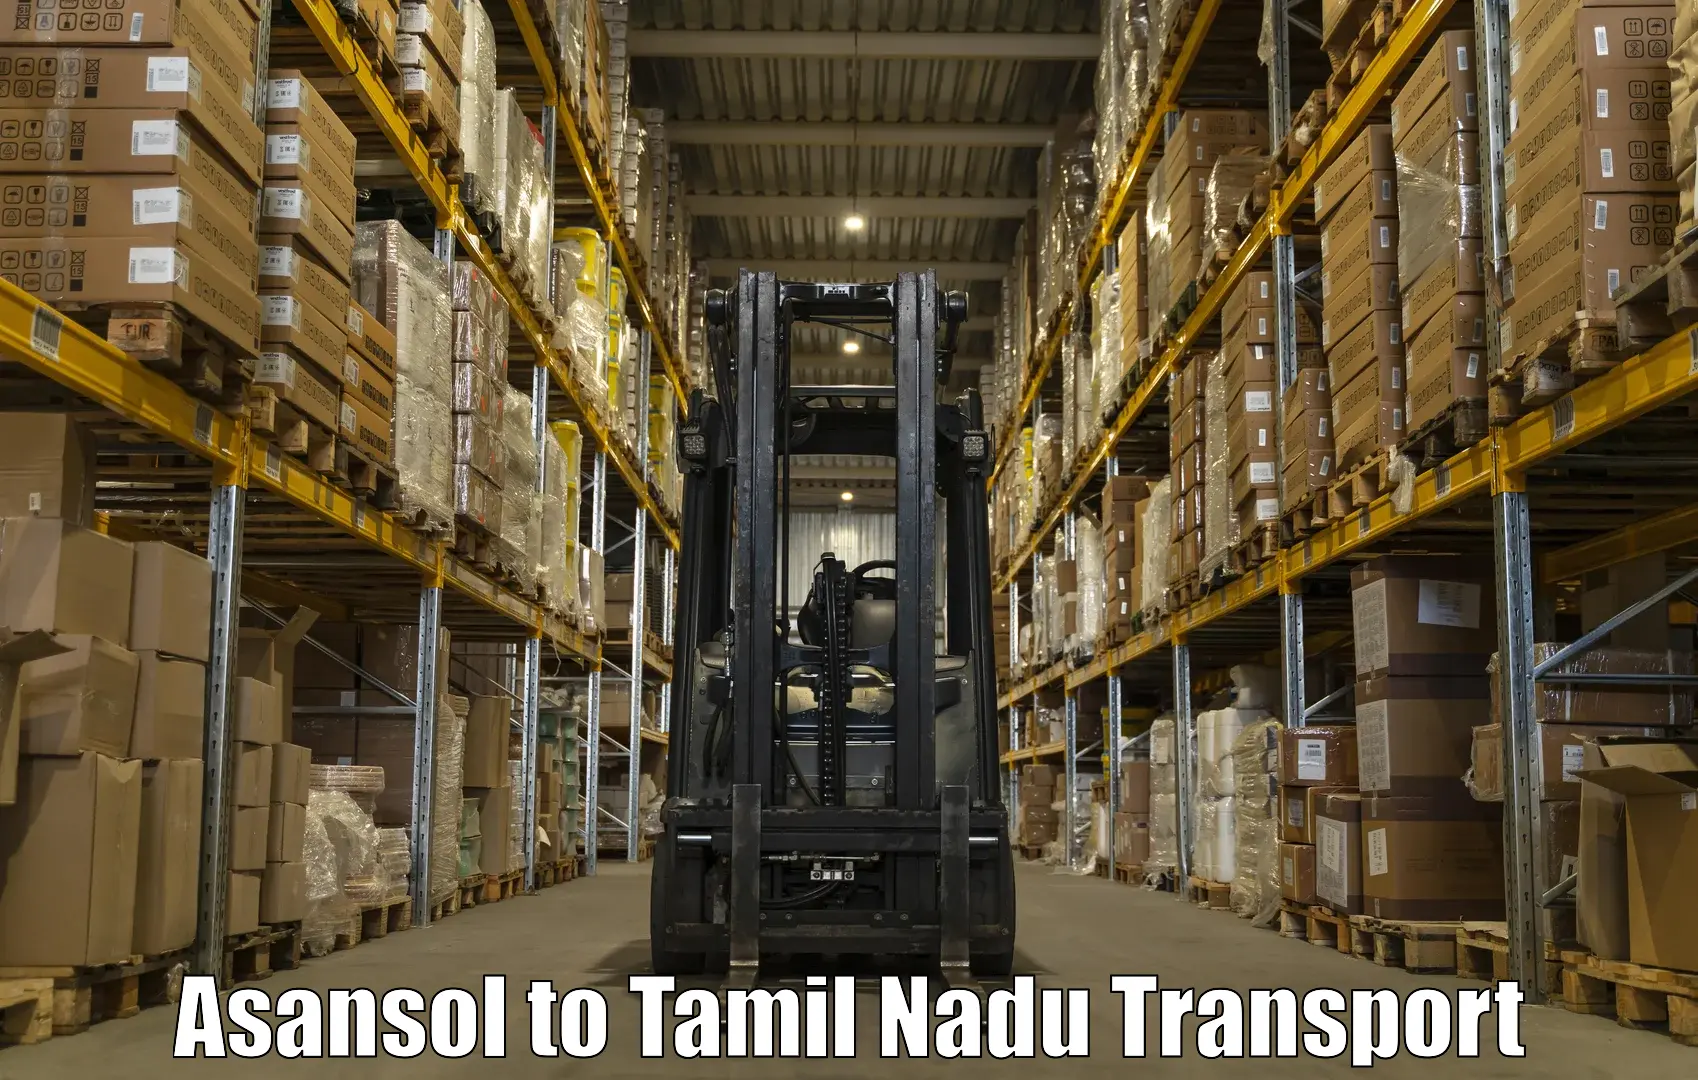 Nearest transport service Asansol to Tiruppur